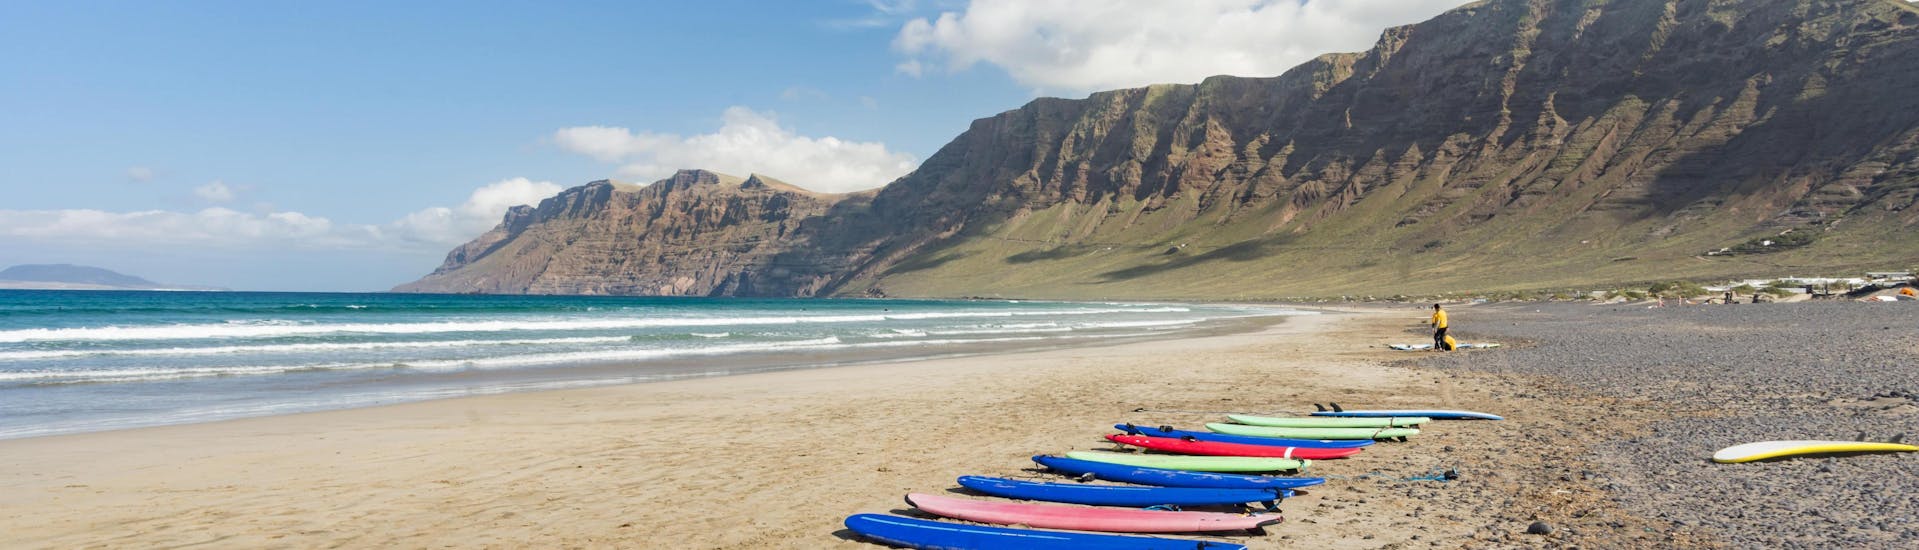 Unas tablas de surf están puestas en la playa, listas para ser usadas para surfear en Lanzarote.